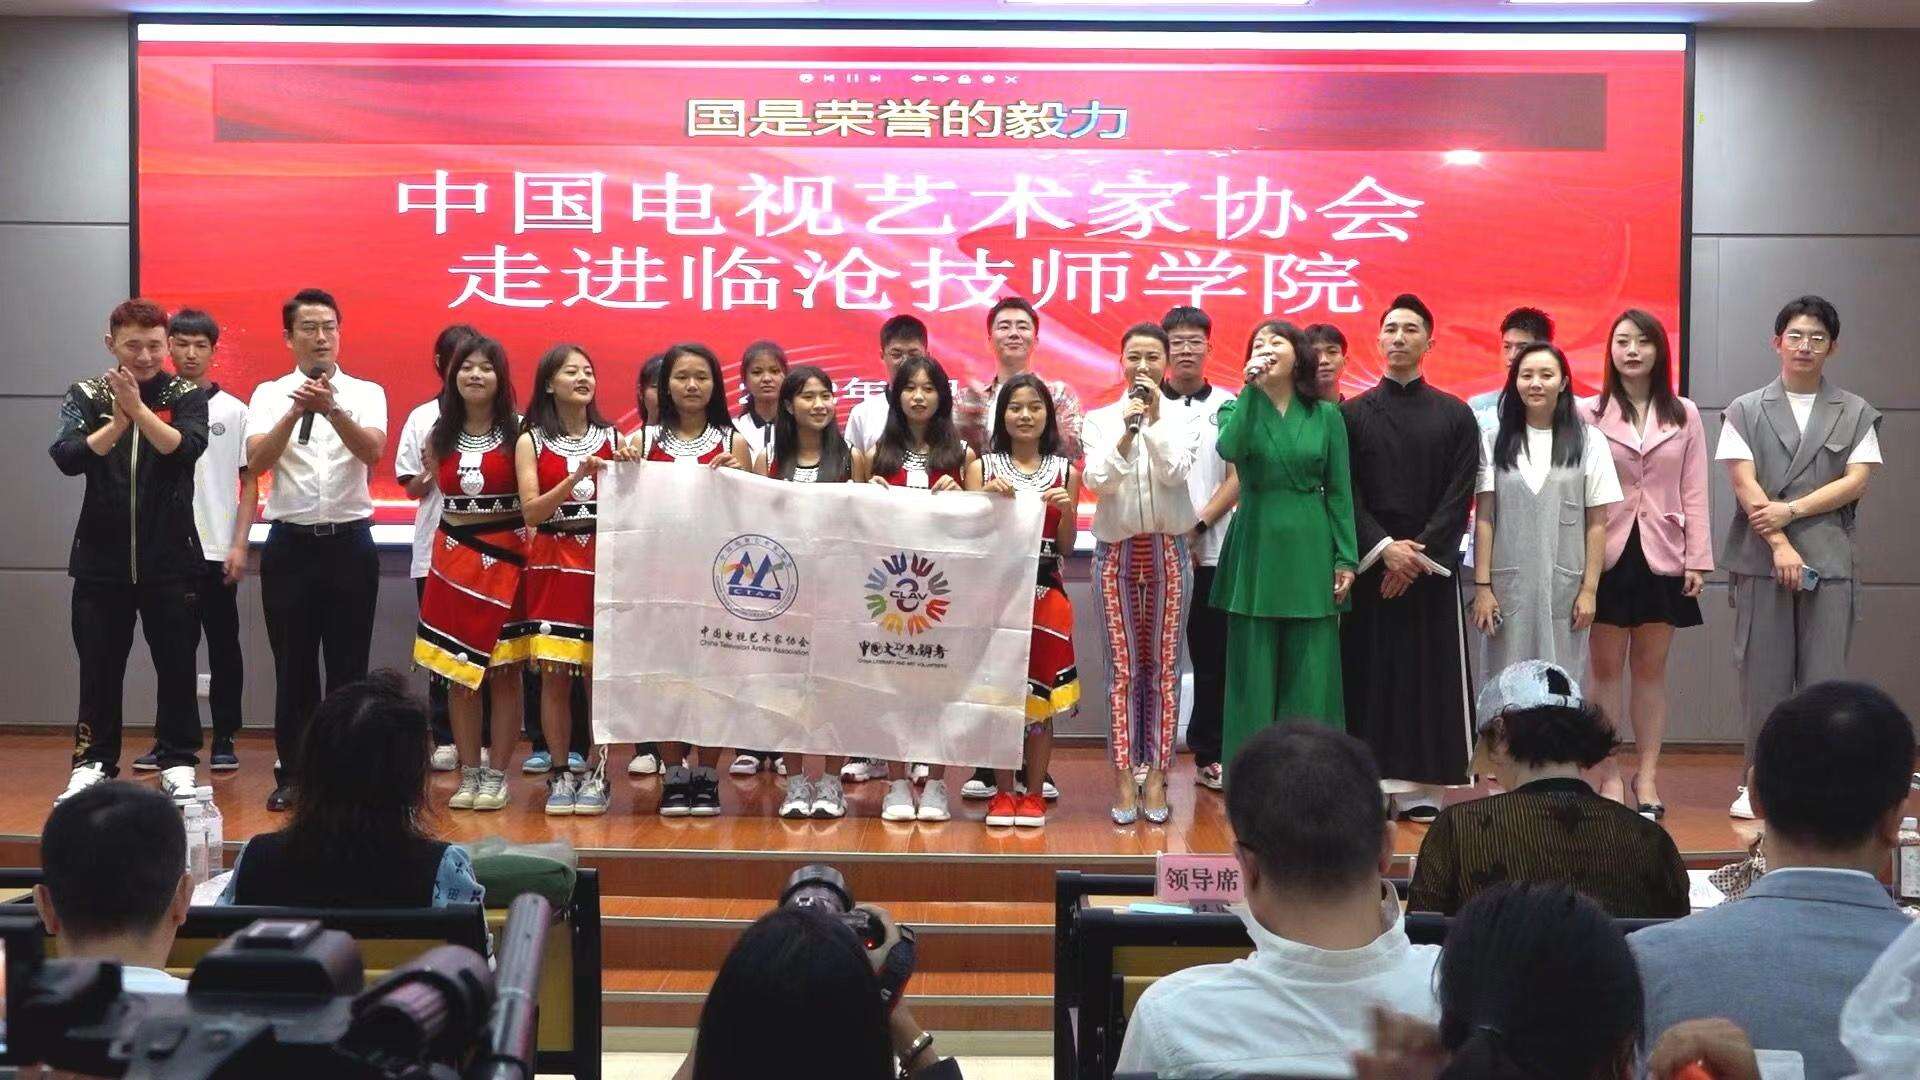 中国视协走进临沧技师学院并举办小分队演出联欢活动